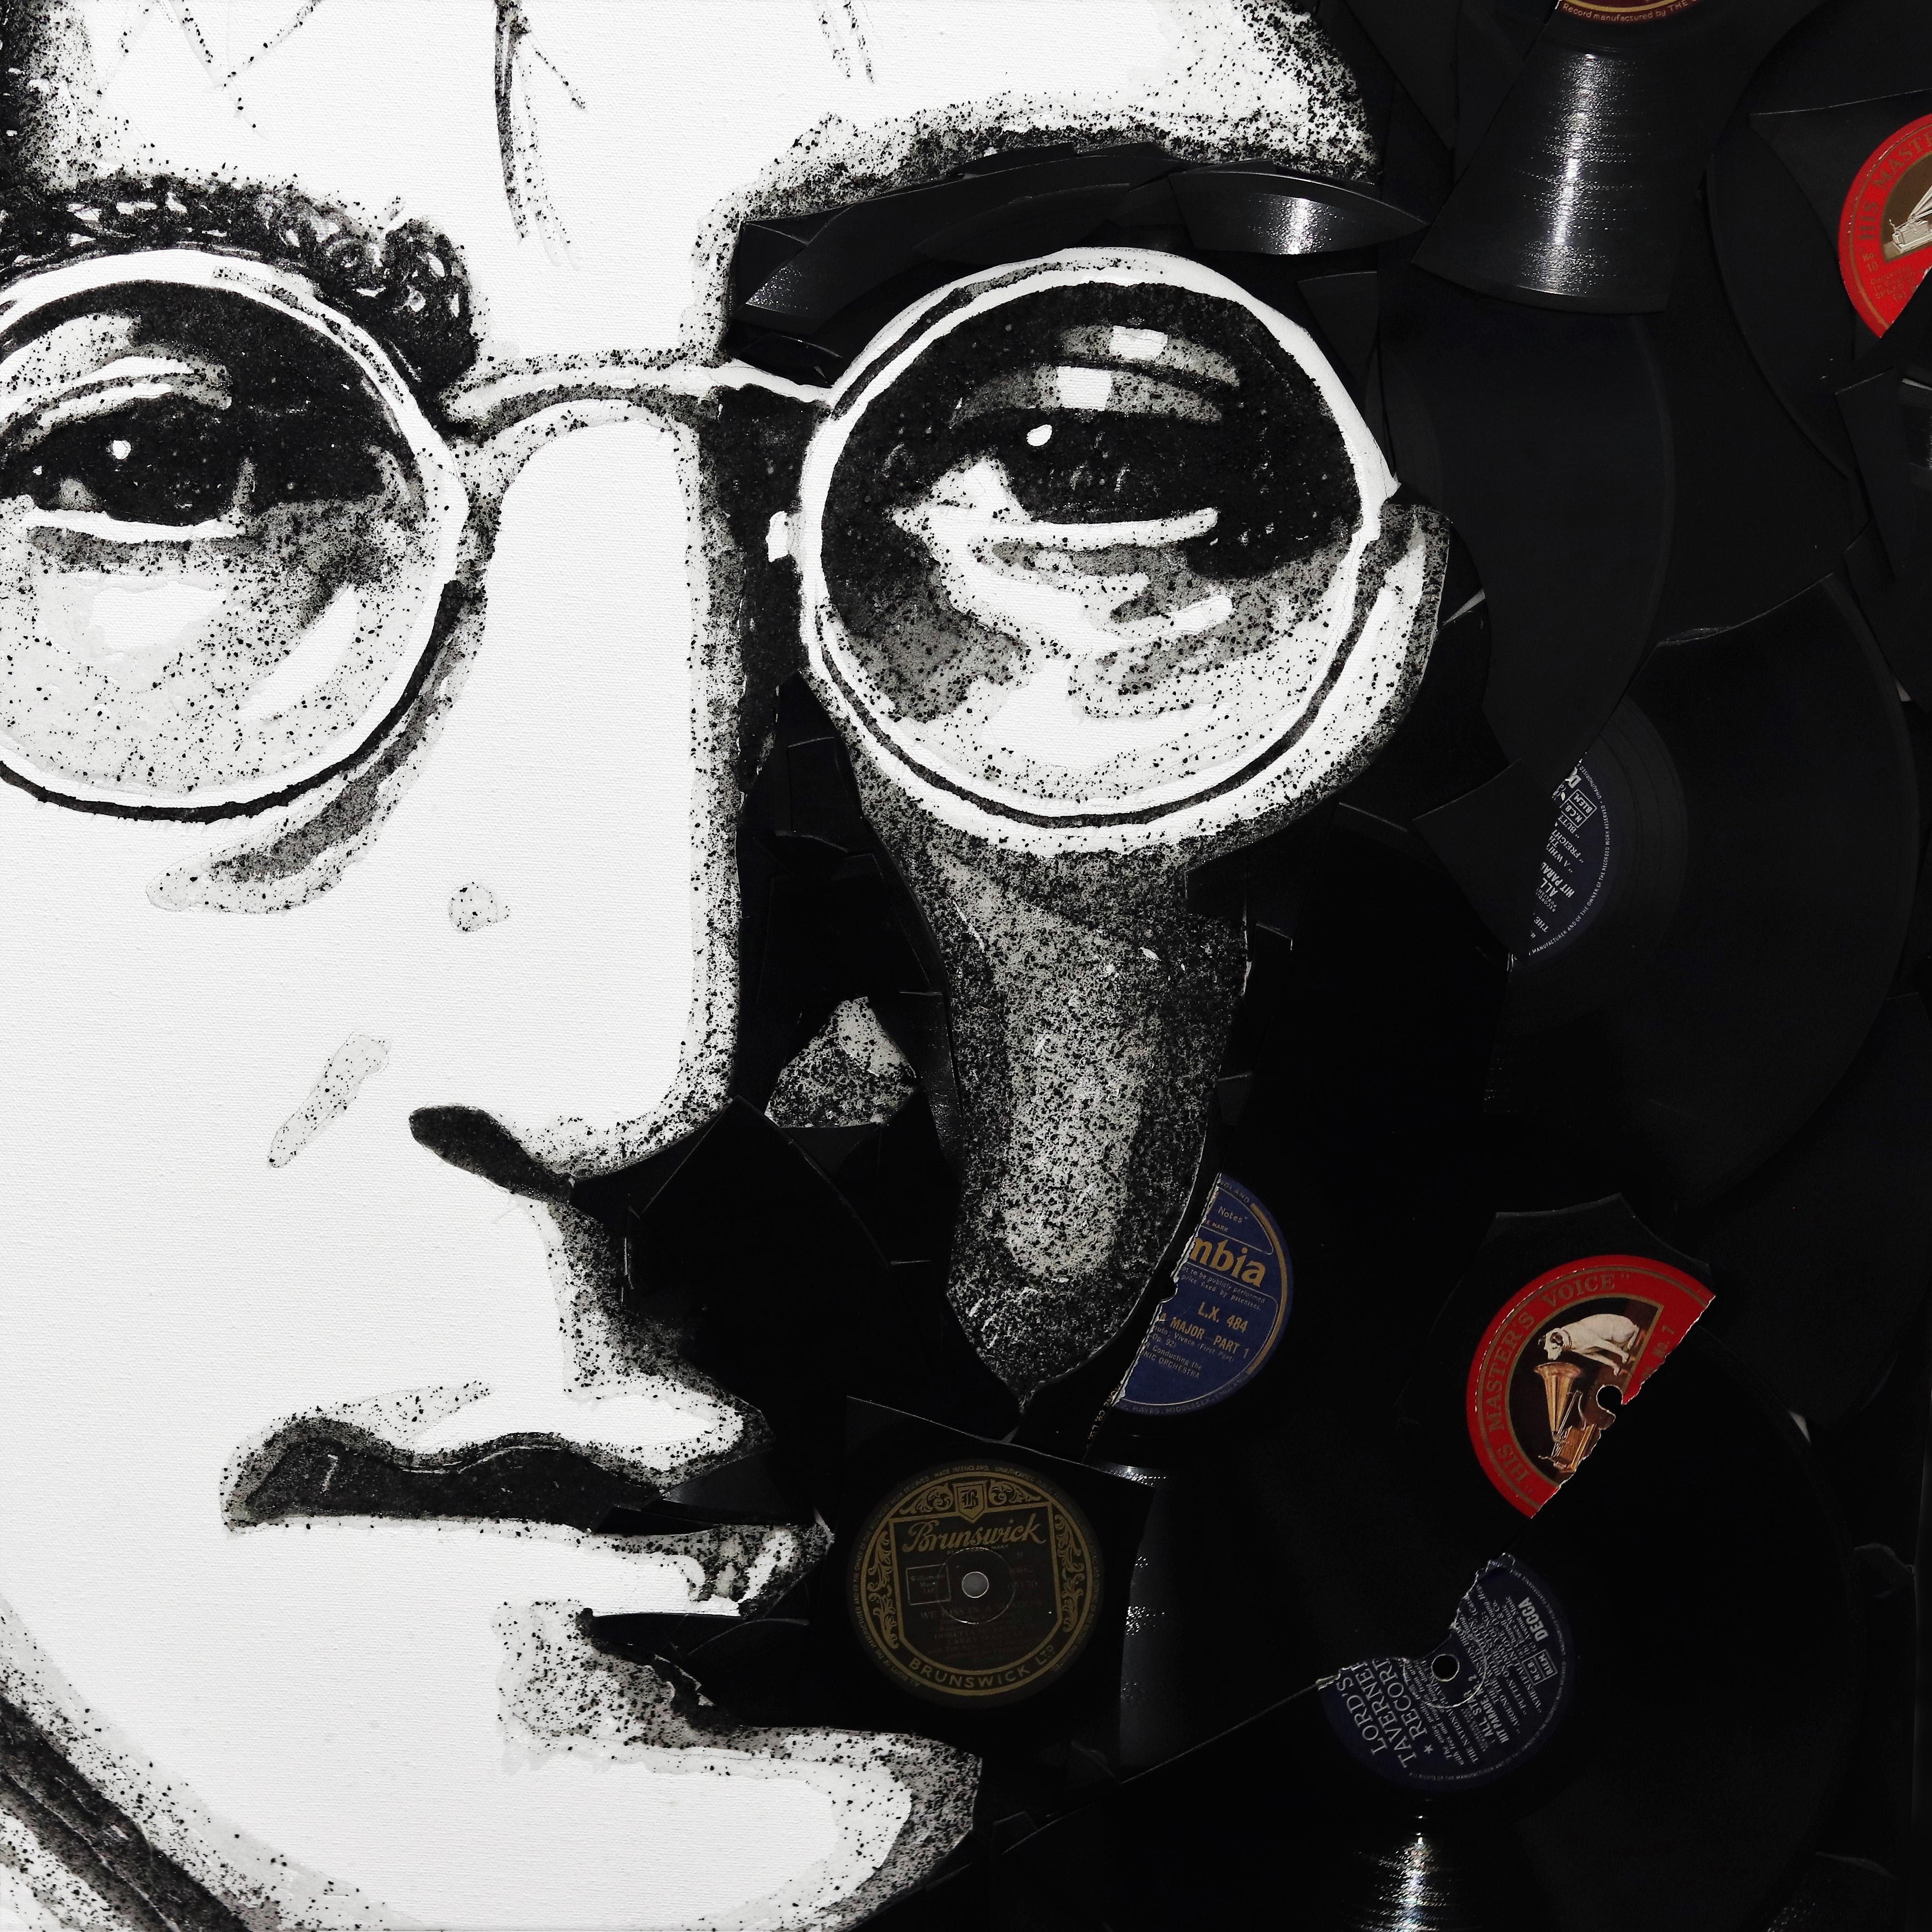 John Lennon - Original Vinyl Records Textural Music Icon Figurative Portrait Art - Black Portrait Painting by Ben Riley